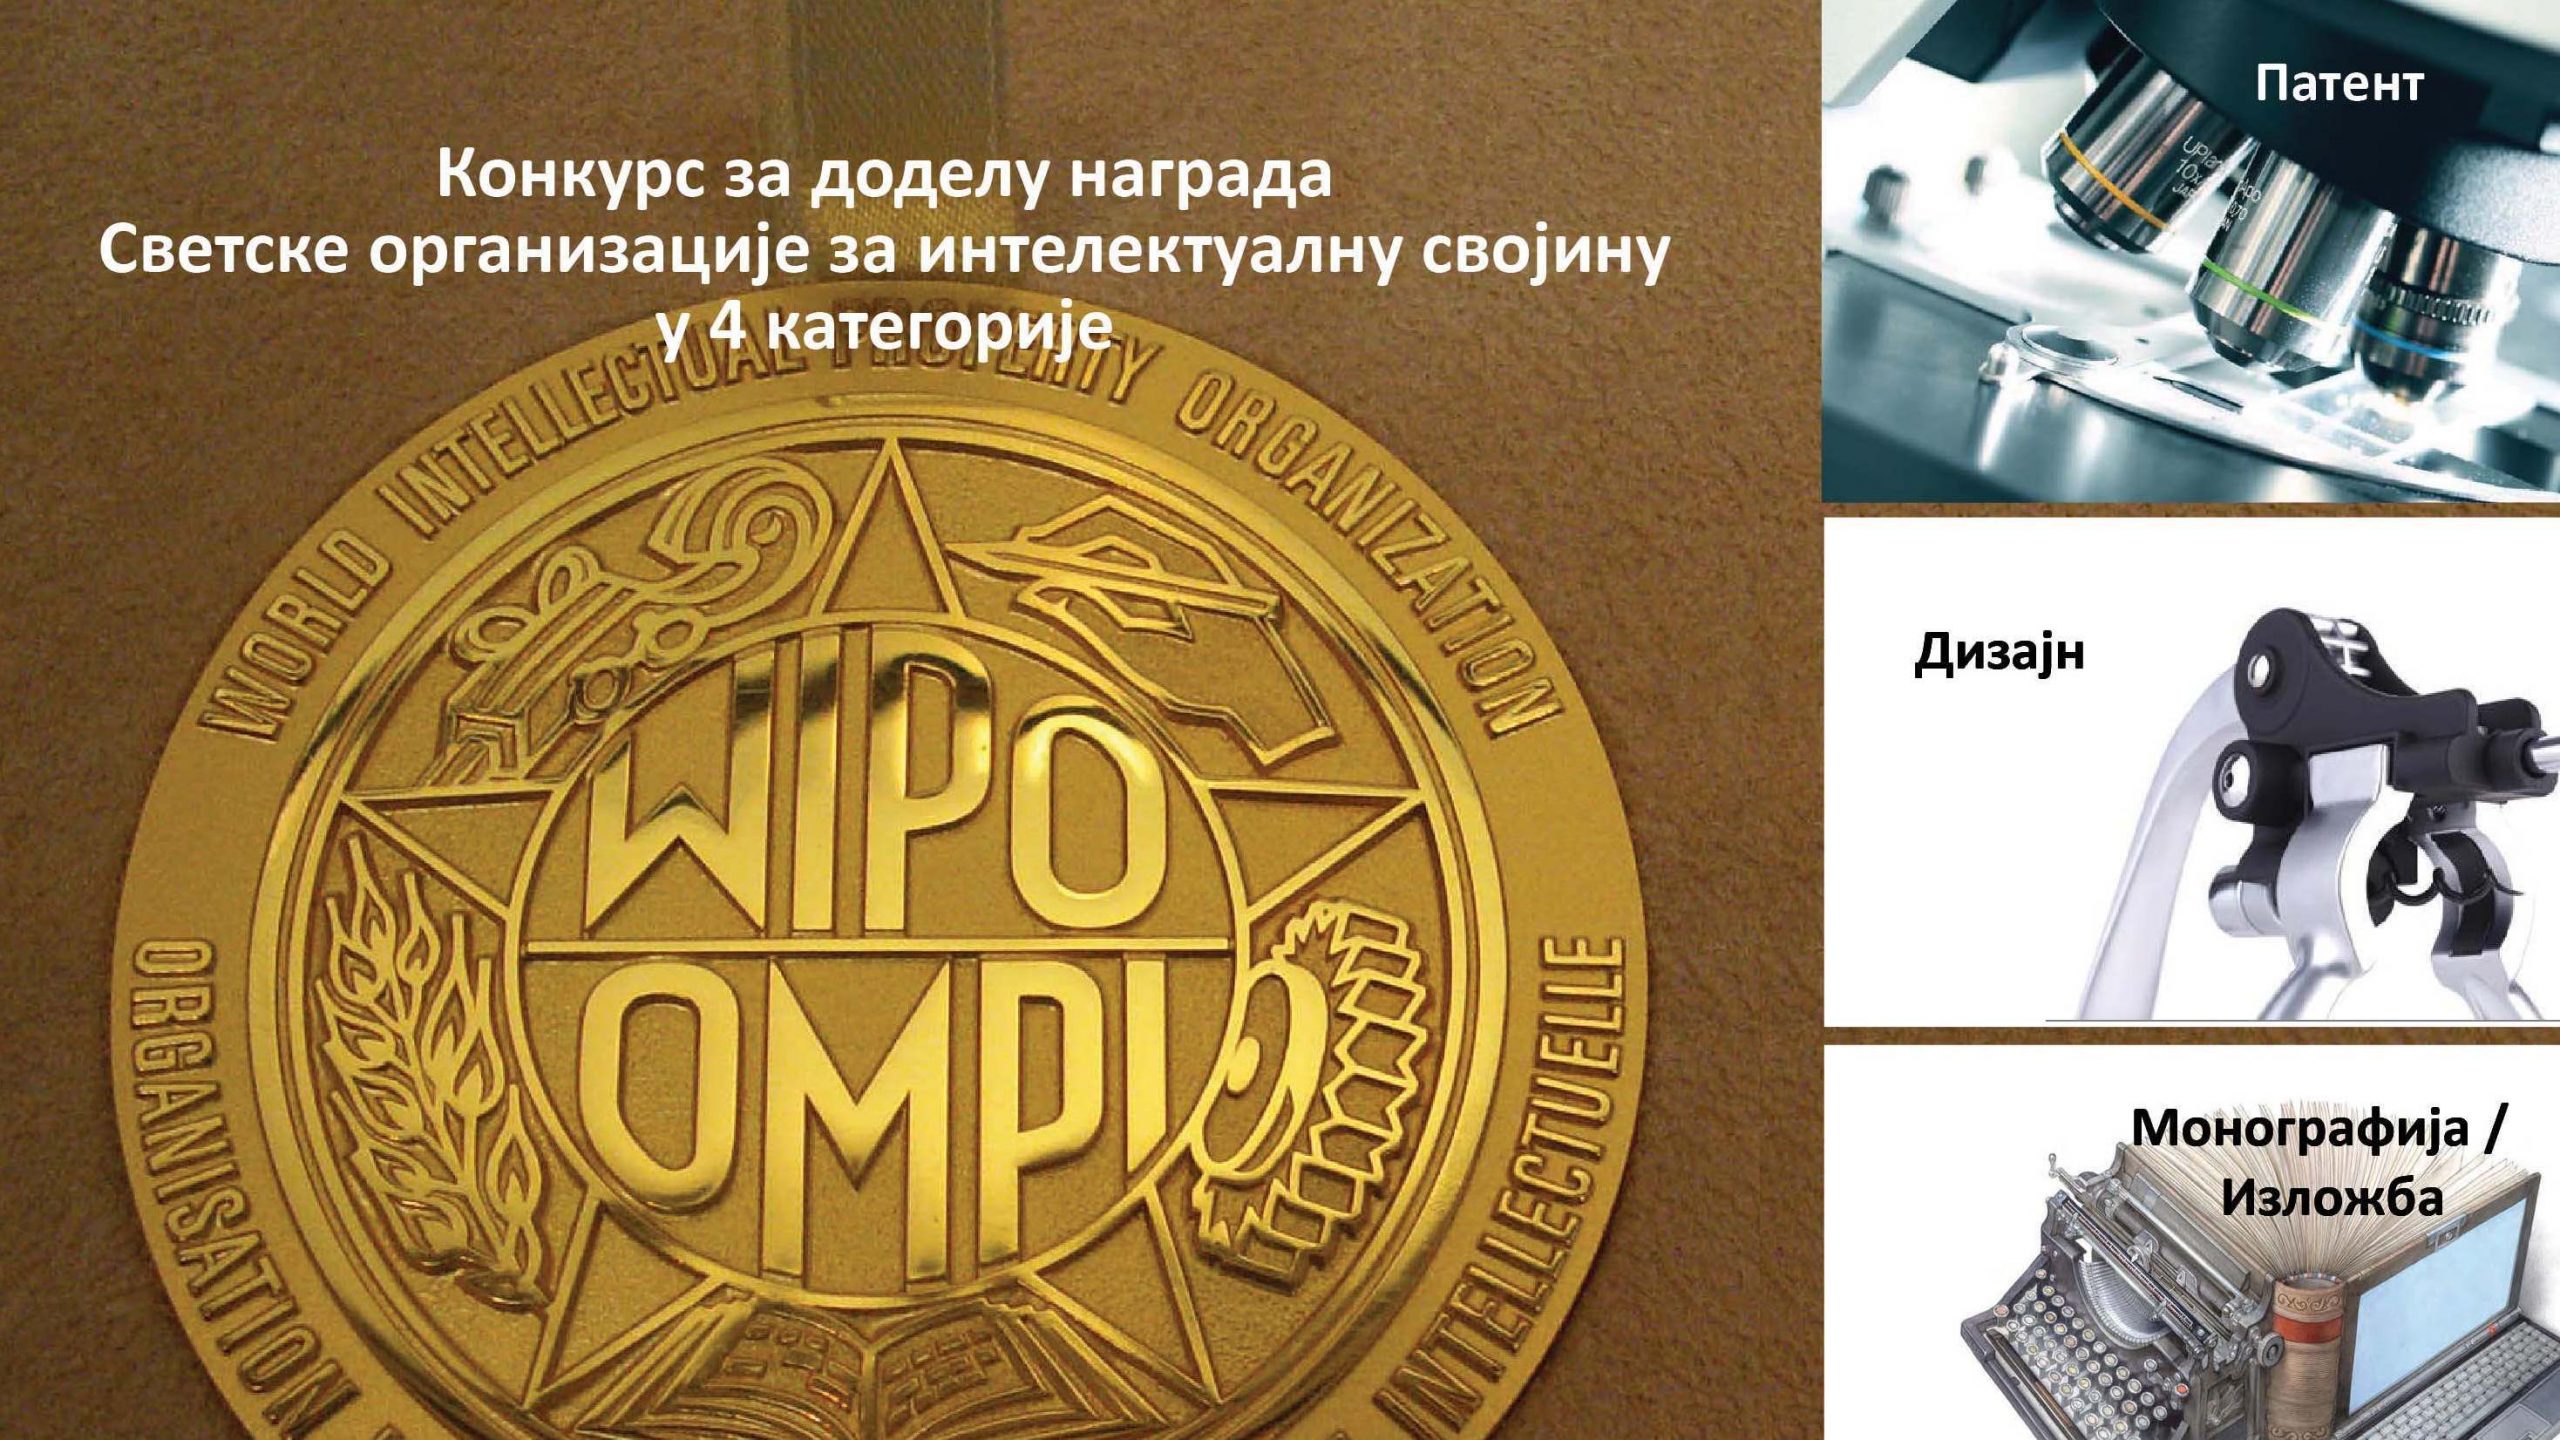 Otvoren konkurs za takmičenje za nagrade Svetske organizacije za intelektualnu svojinu 1